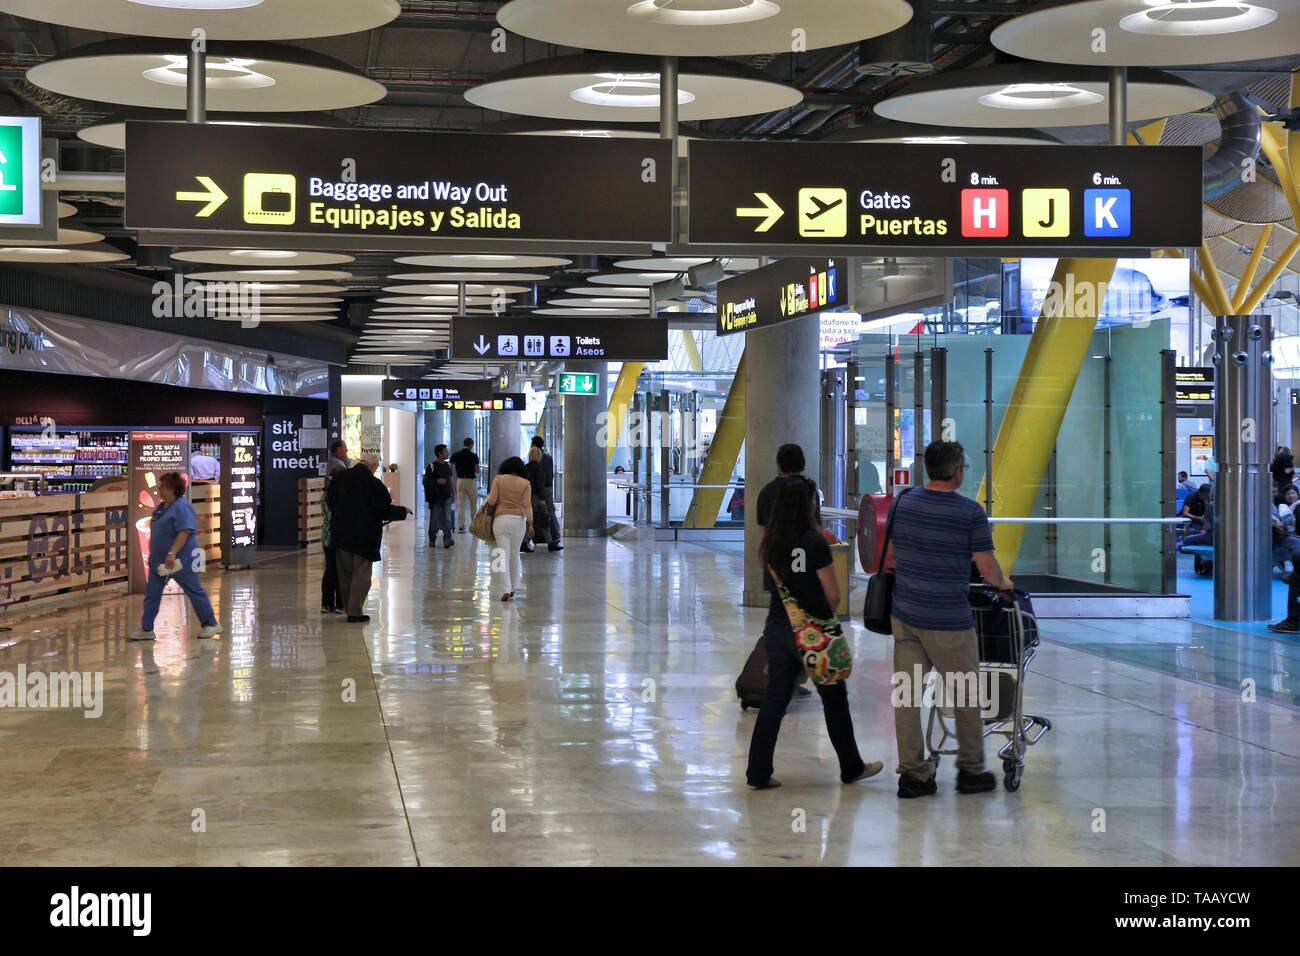 MADRID, Spanien - 20. OKTOBER 2014: Passagiere besuchen Sie Stift 4 am Flughafen Madrid Barajas entfernt. Die berühmten Terminal 4 wurde von Antonio Lamela und Reich konzipiert Stockfoto